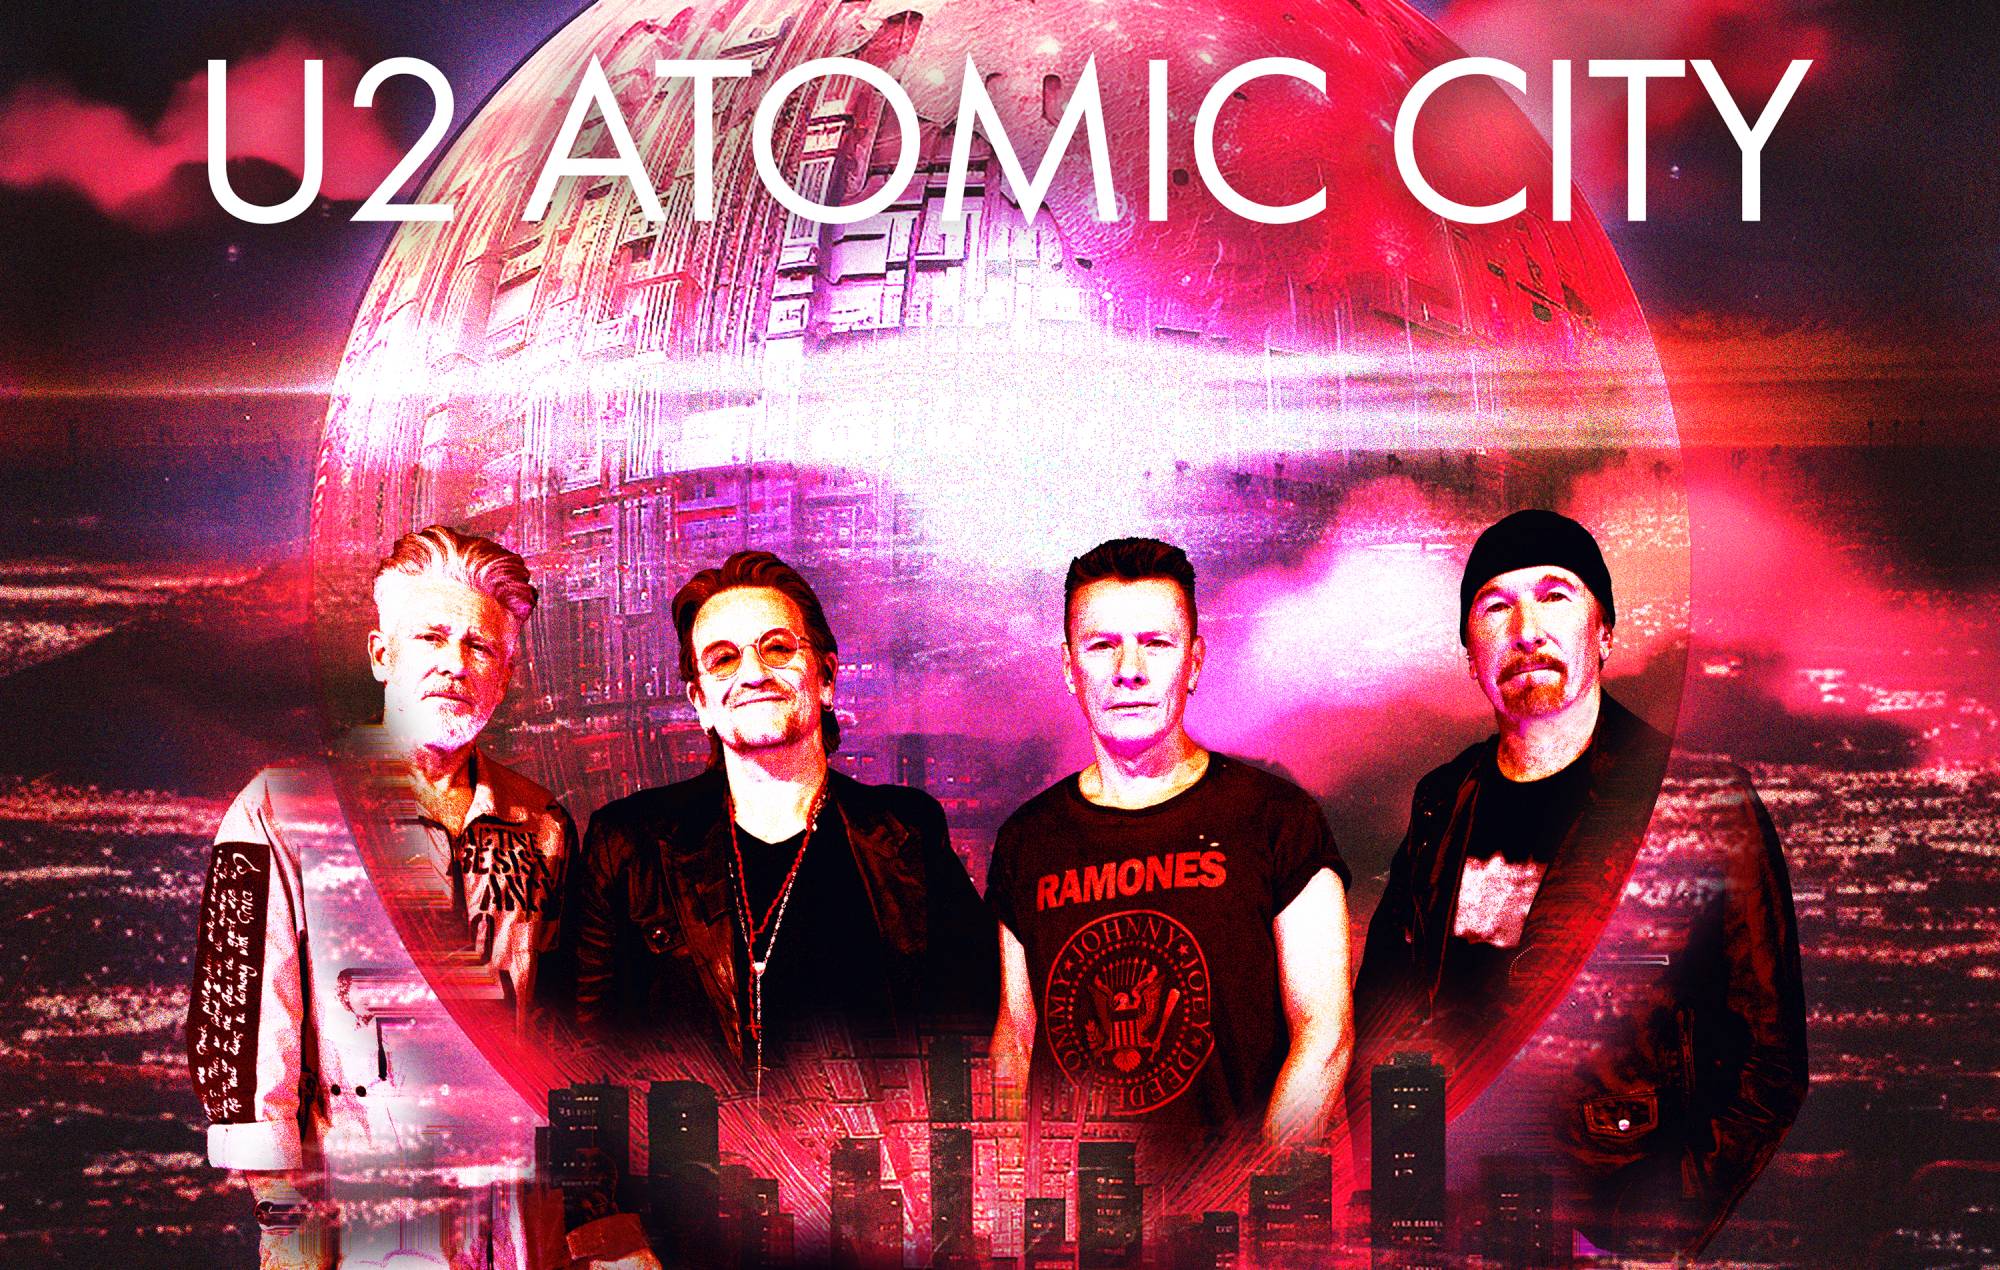 'Atomic City' artwork - CREDIT: Press/U2